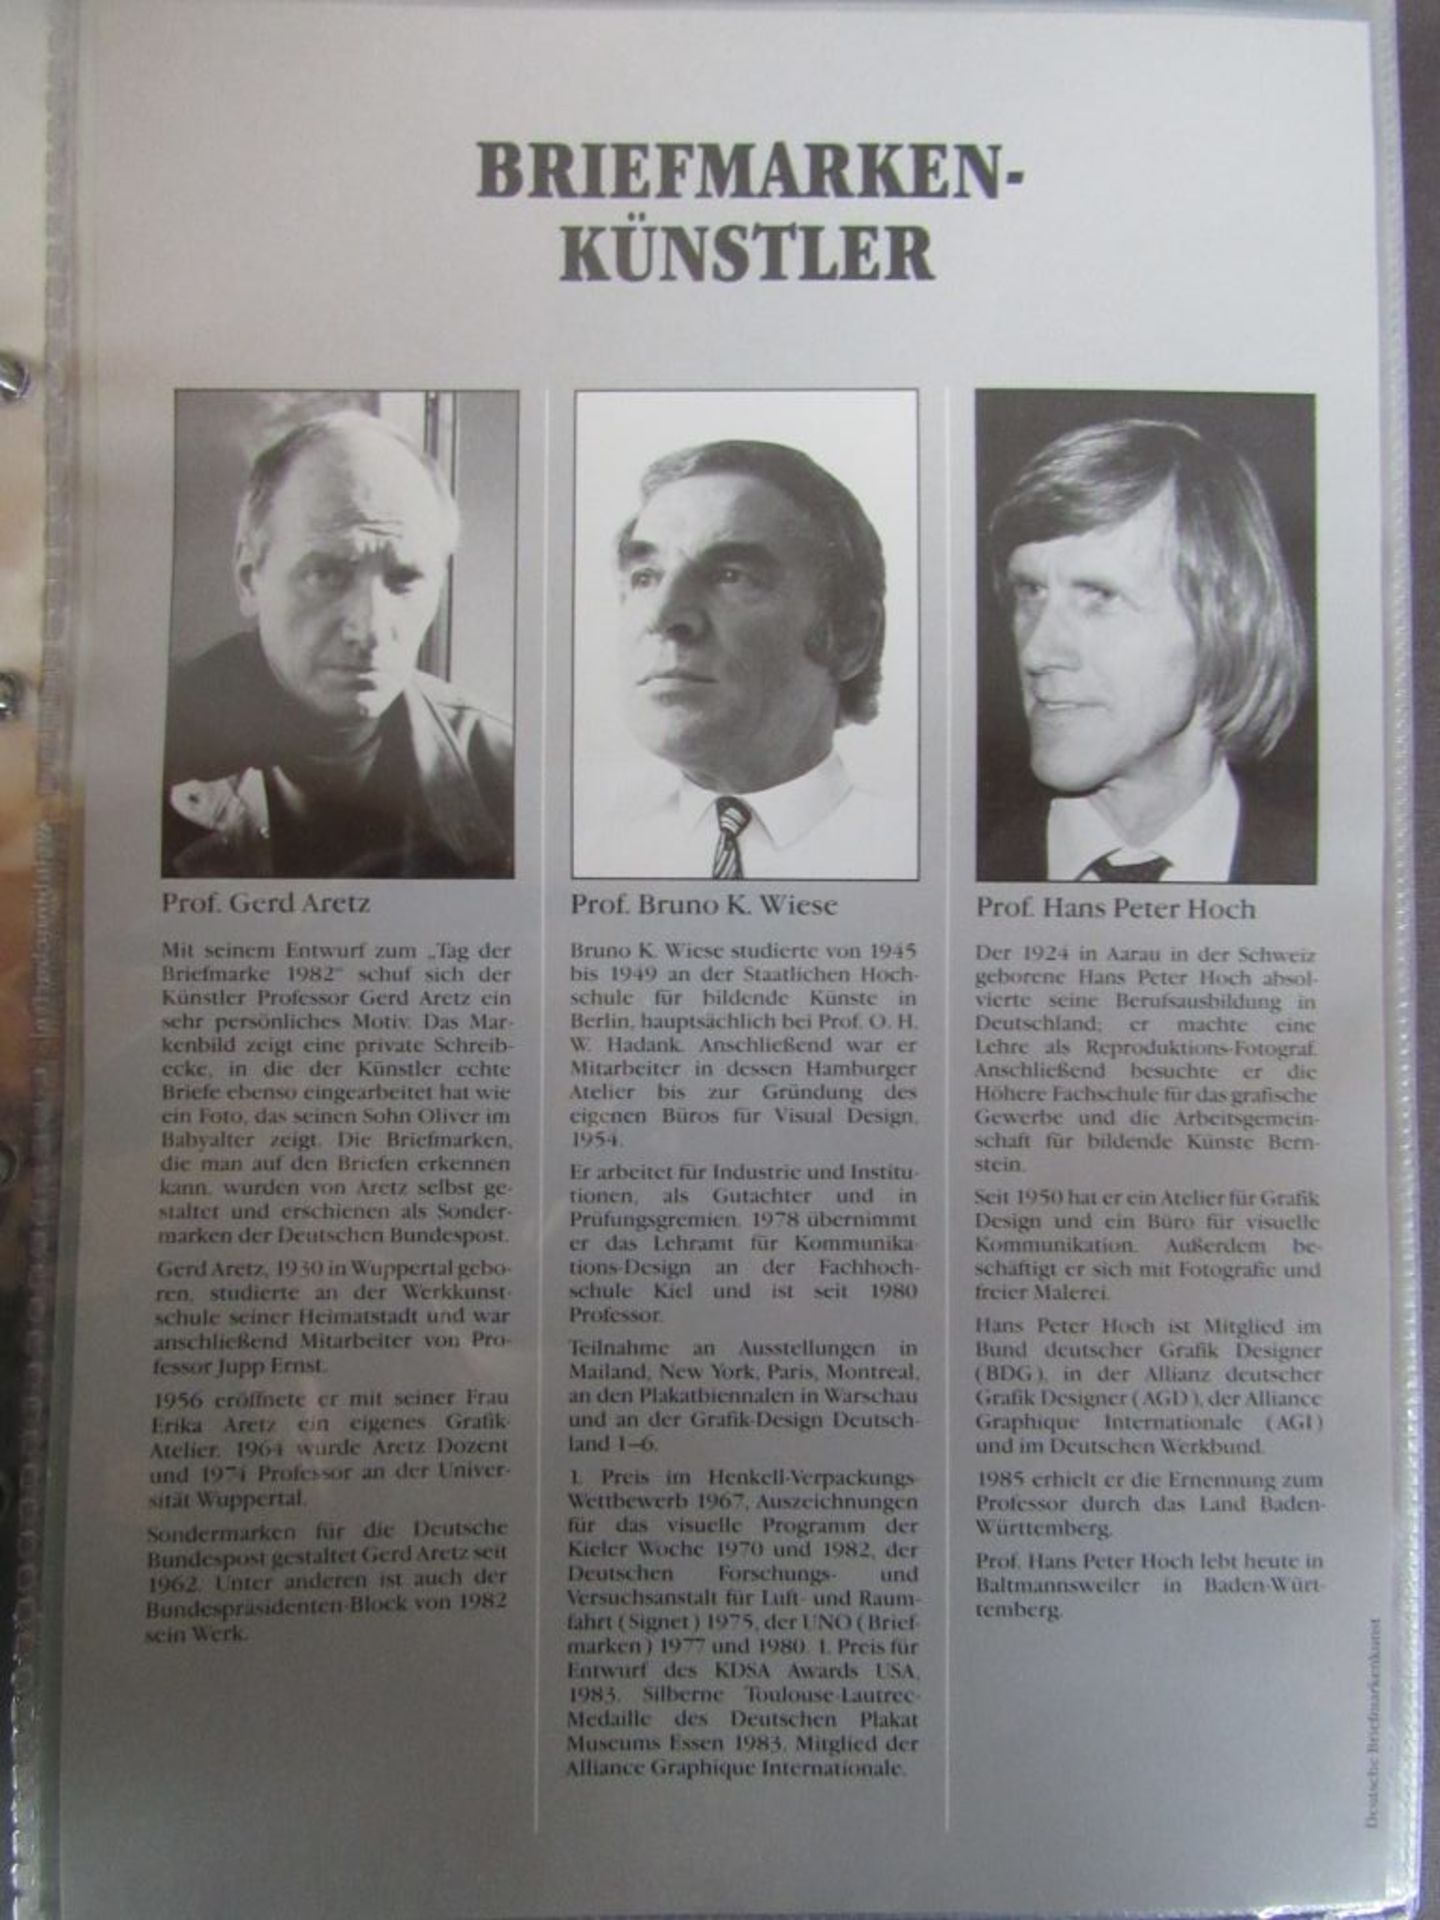 Künstler ETB Bund 1987-1988 kpl. 53 - Image 2 of 7